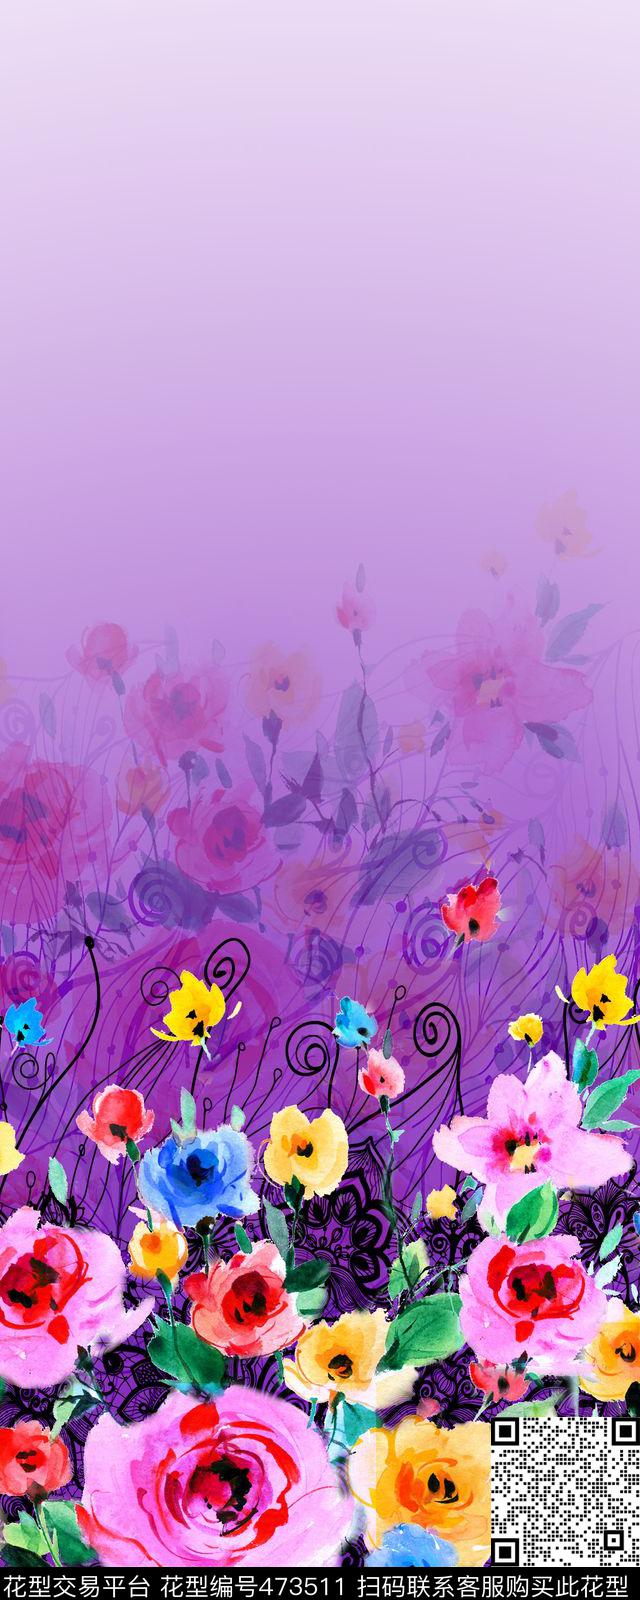 水彩手绘花卉 抽象几何纹路 渐变过渡 - 473511 - 水彩手绘花卉 抽象几何纹路 渐变过渡 - 数码印花花型 － 女装花型设计 － 瓦栏